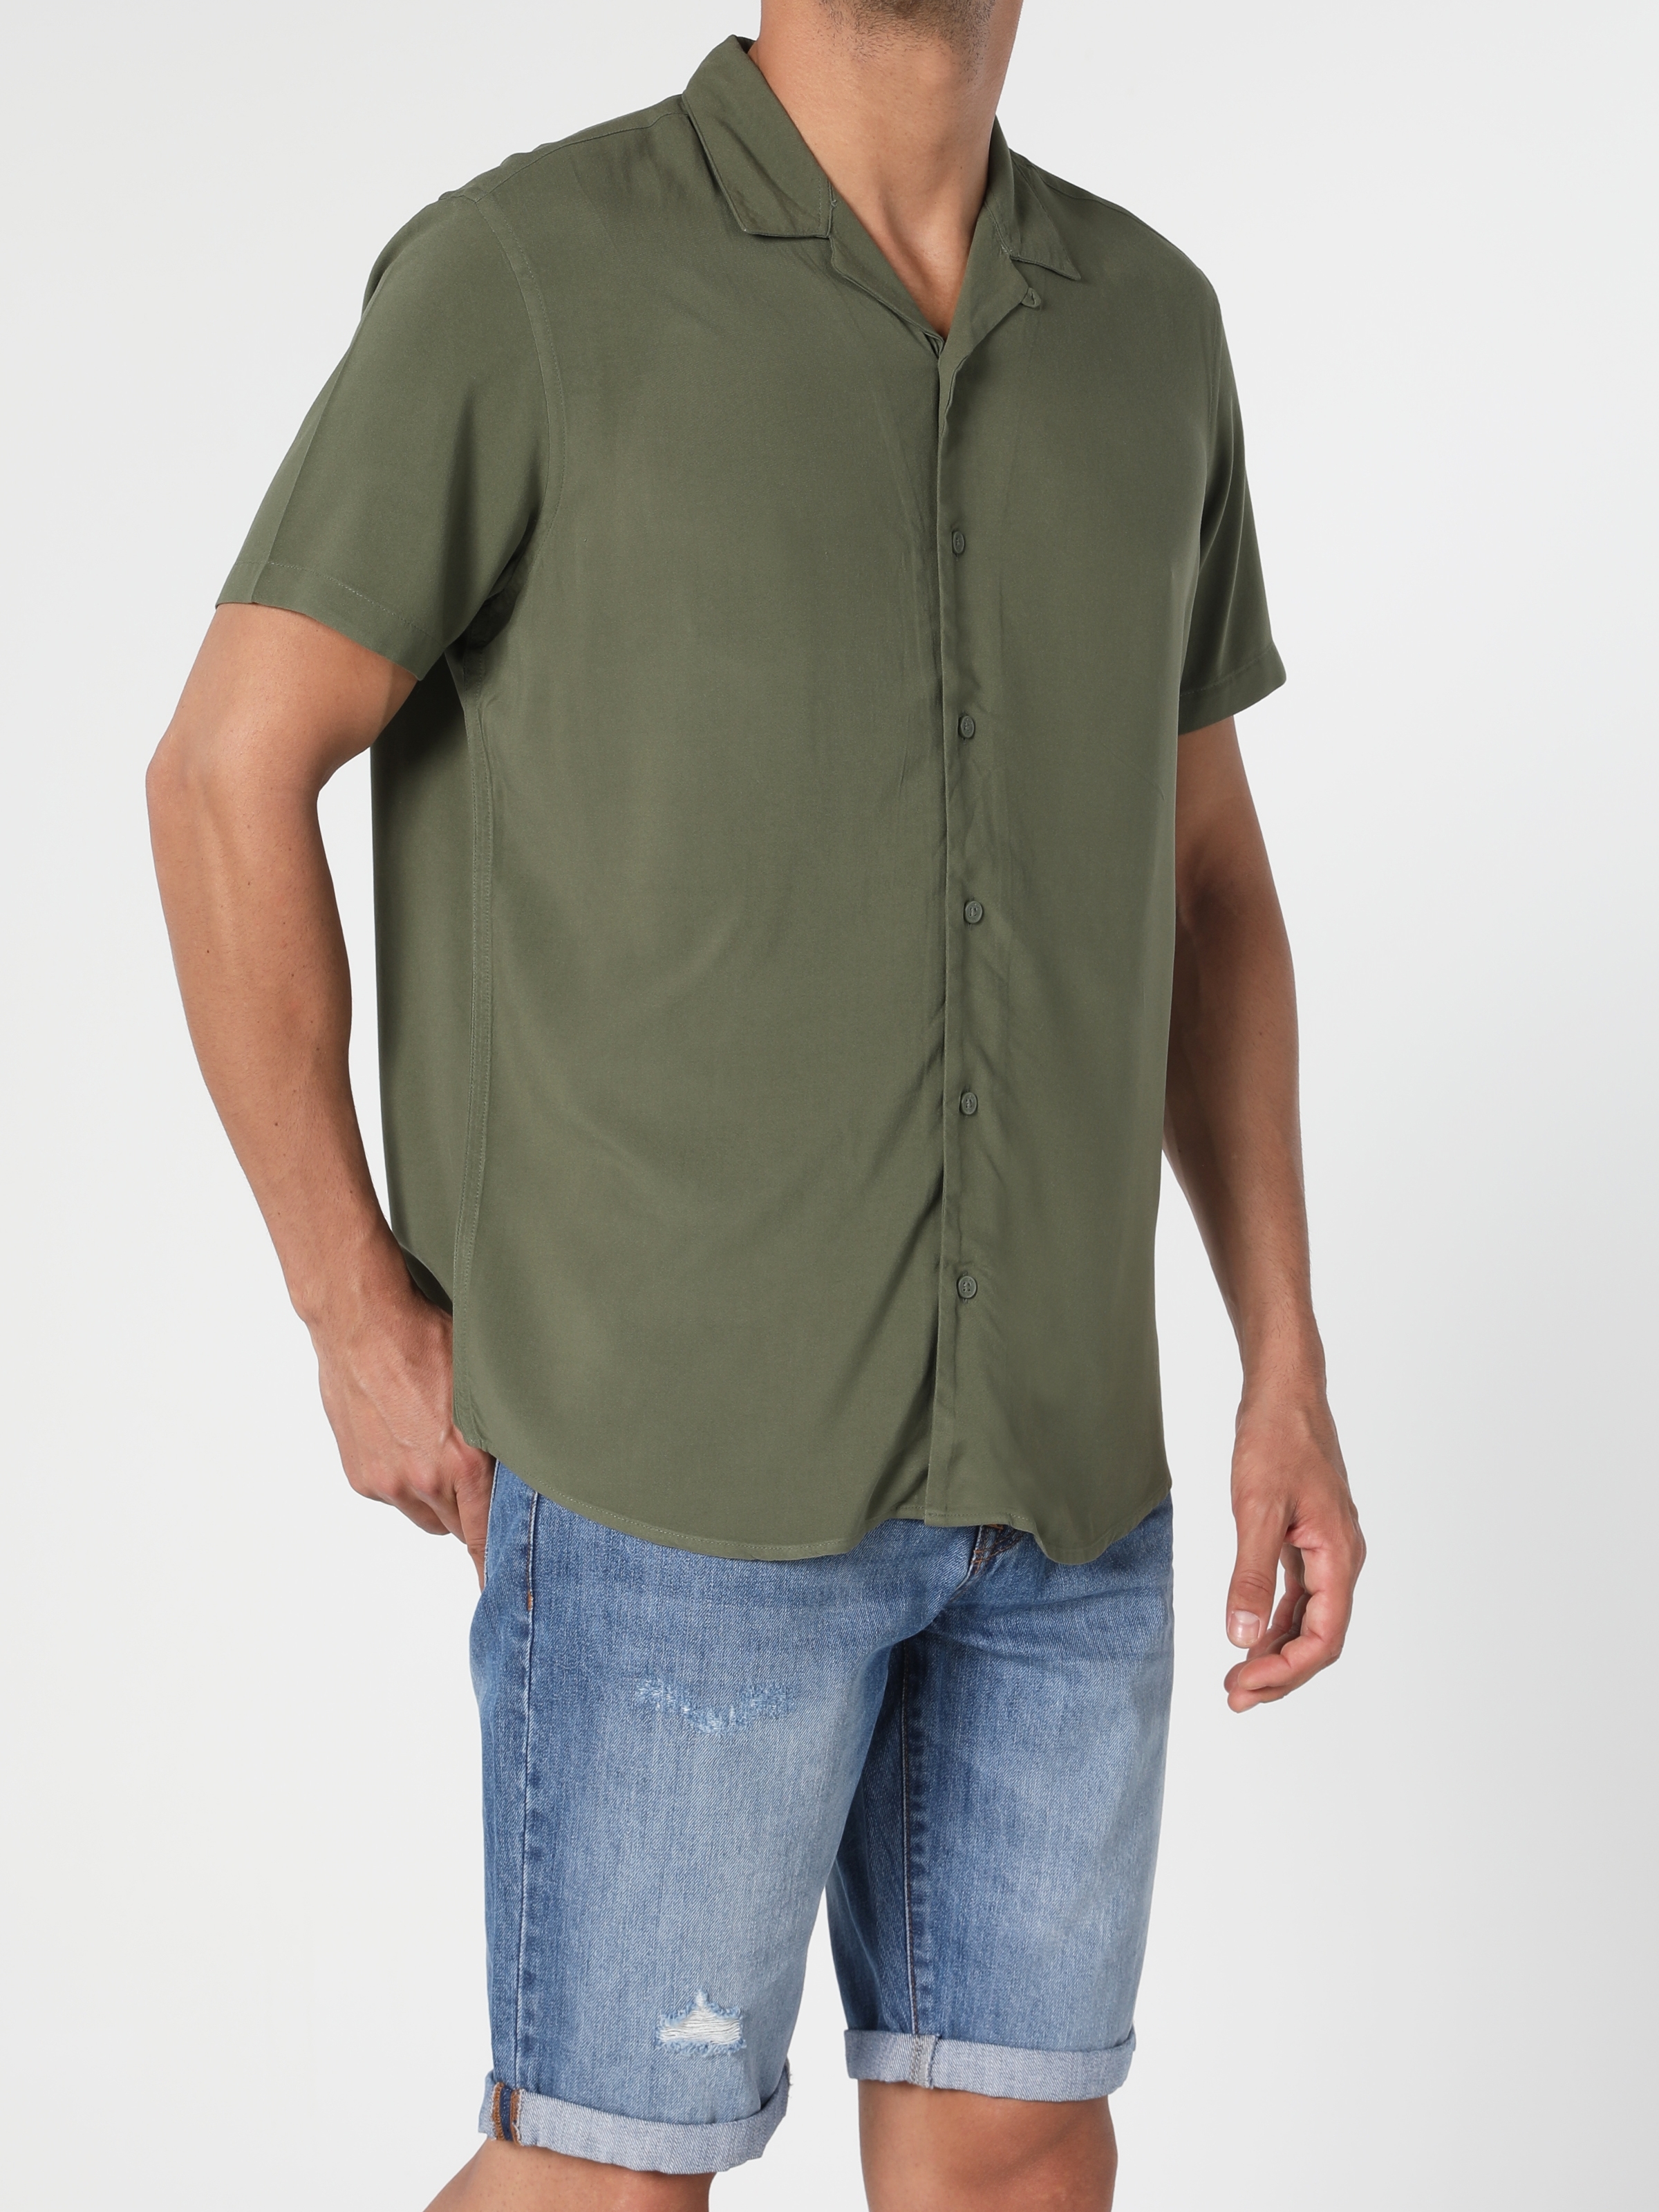 Colins Haki Regular Fit Shirt Neck Erkek Kısa Kol Gömlek. 4